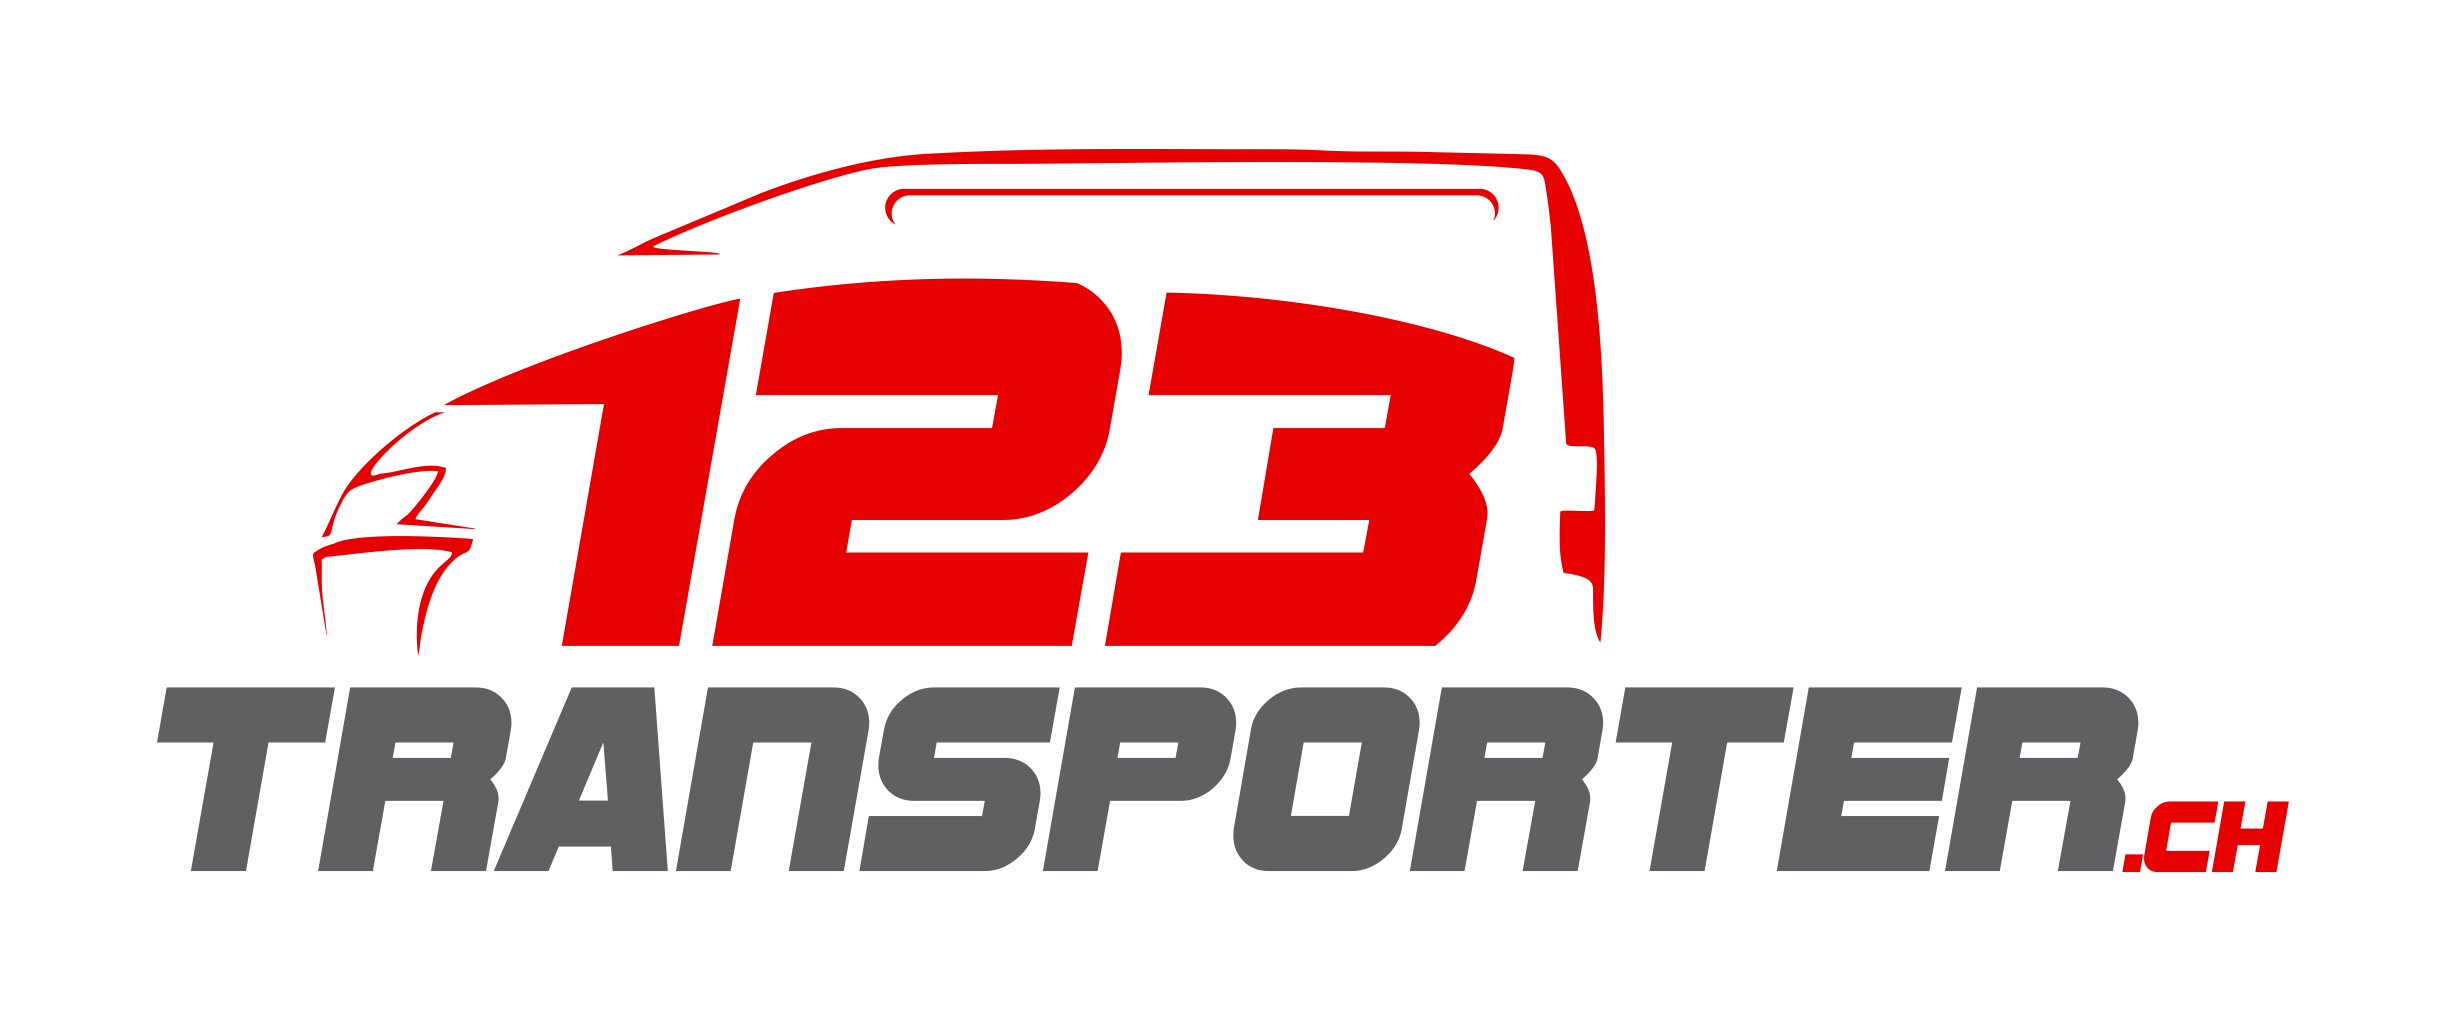 123transporter.ch